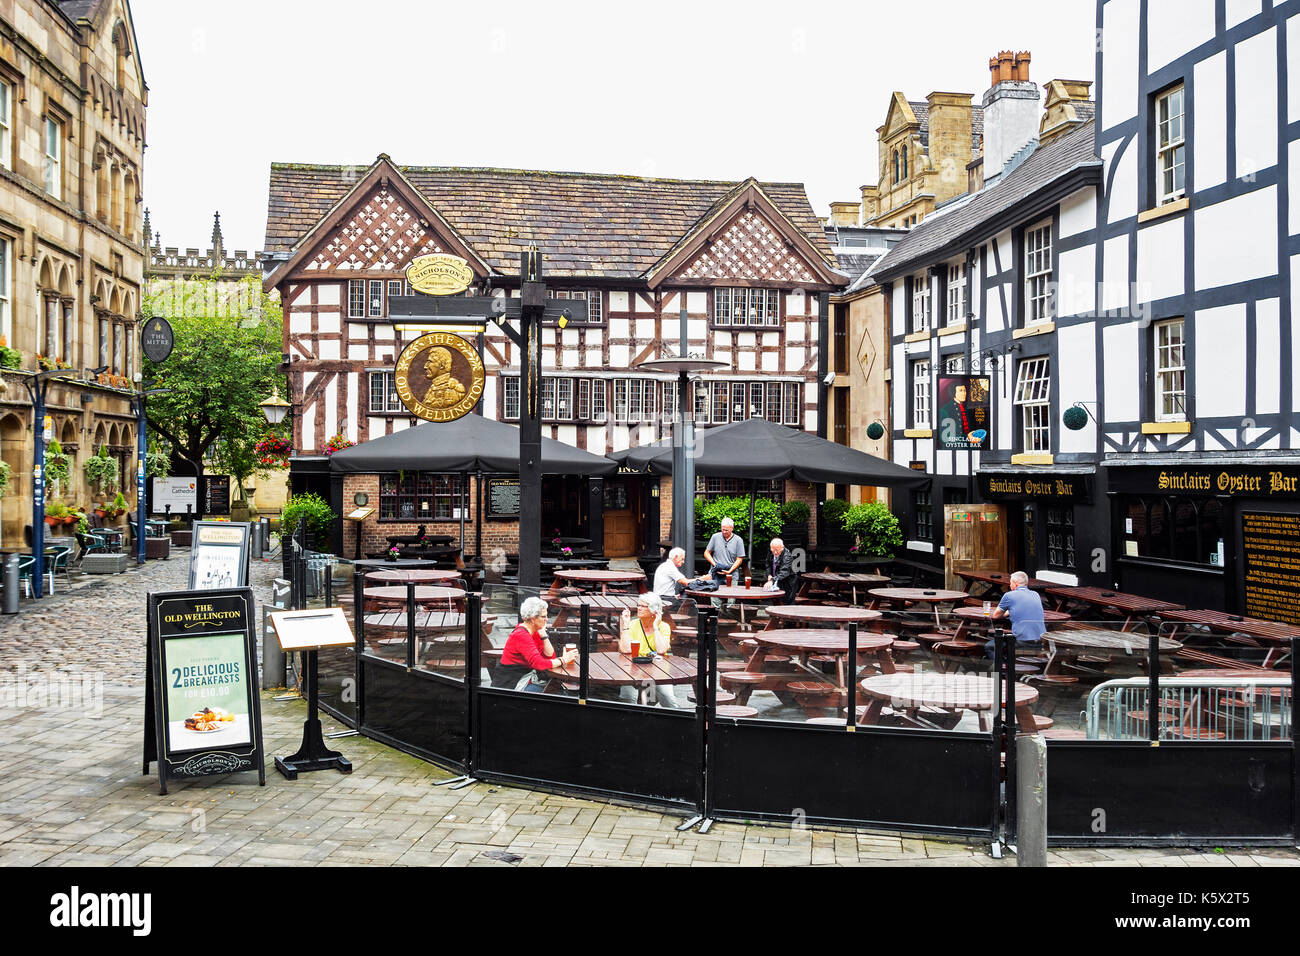 La vieille ville historique de pubs de Shambles Square, Manchester, Angleterre, Royaume-Uni. Banque D'Images